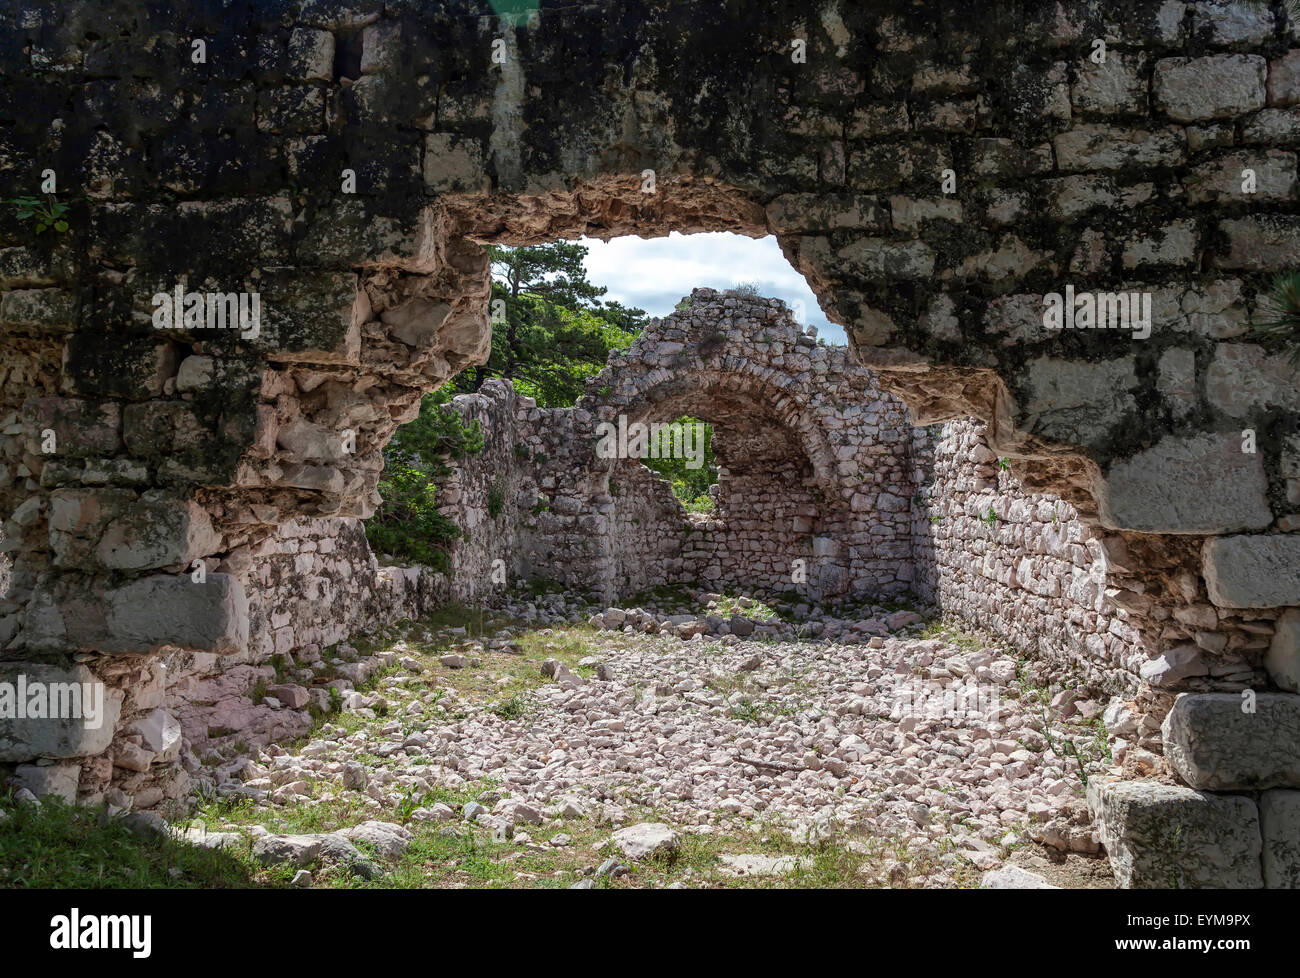 Ruine eines Hauses auf der Insel Krk, Kroatien Foto Stock